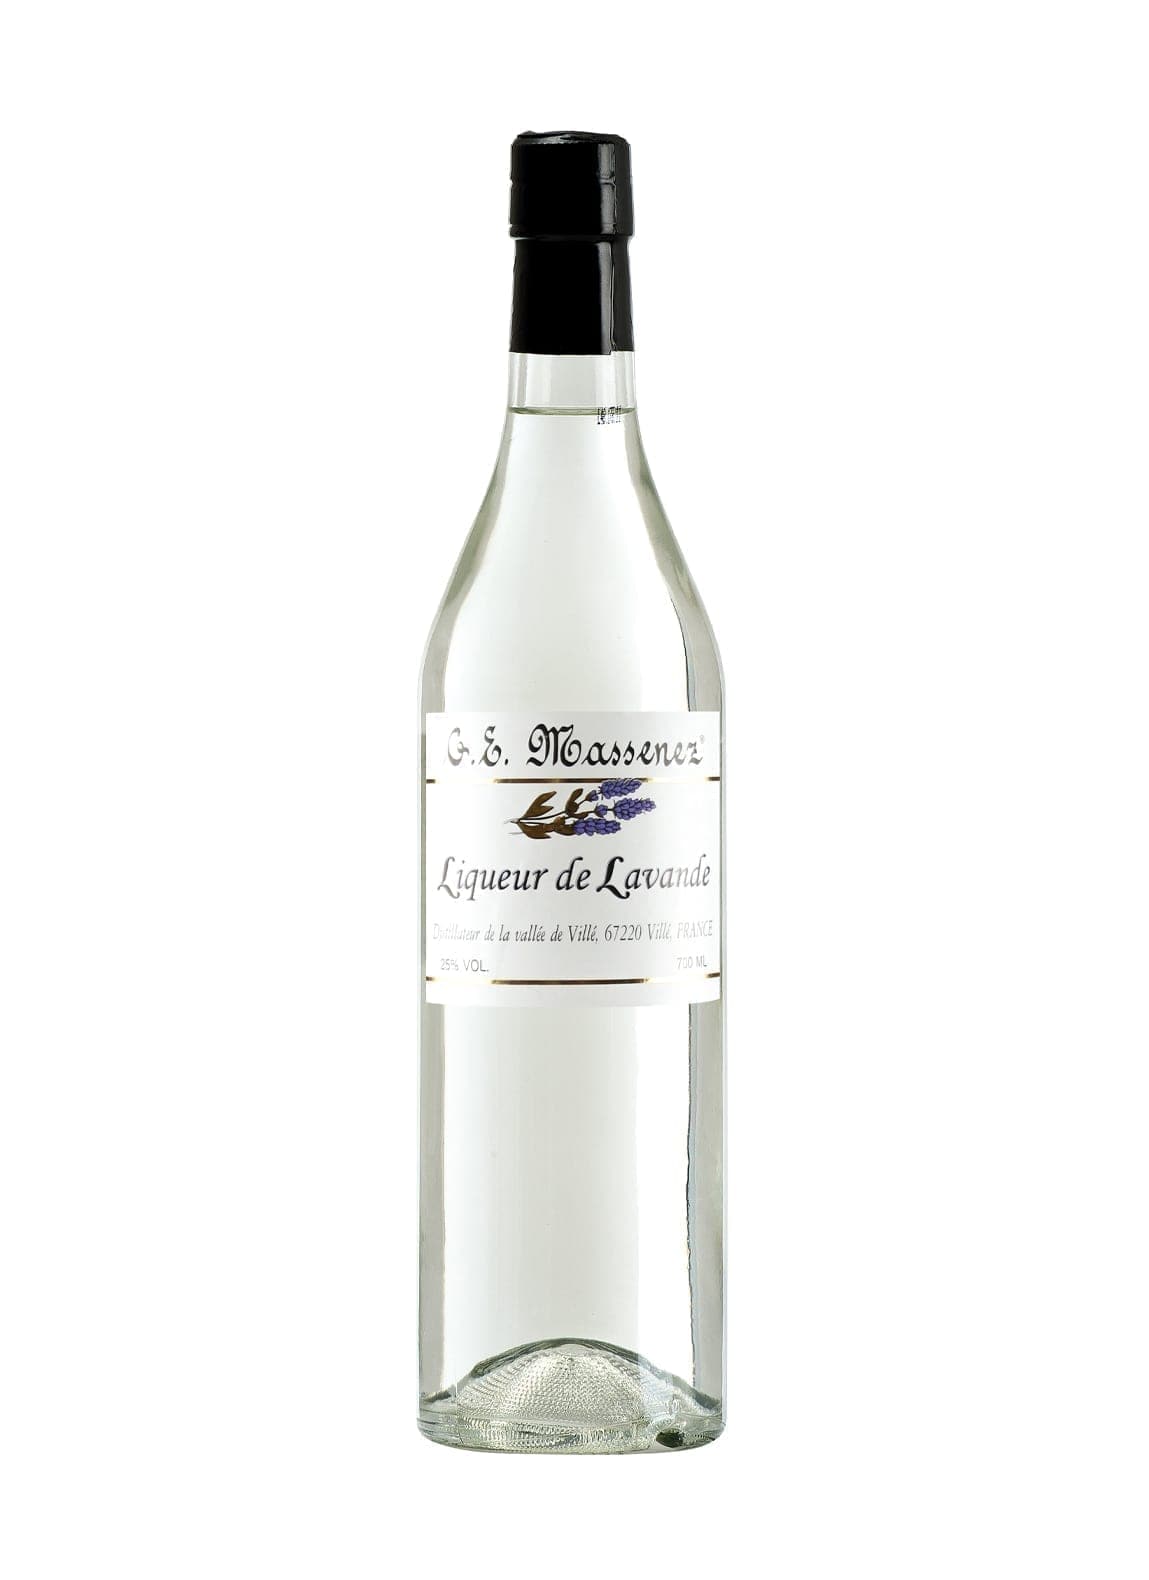 Massenez Liqueur Lavande (Lavender) 25% 700ml | Liqueurs | Shop online at Spirits of France